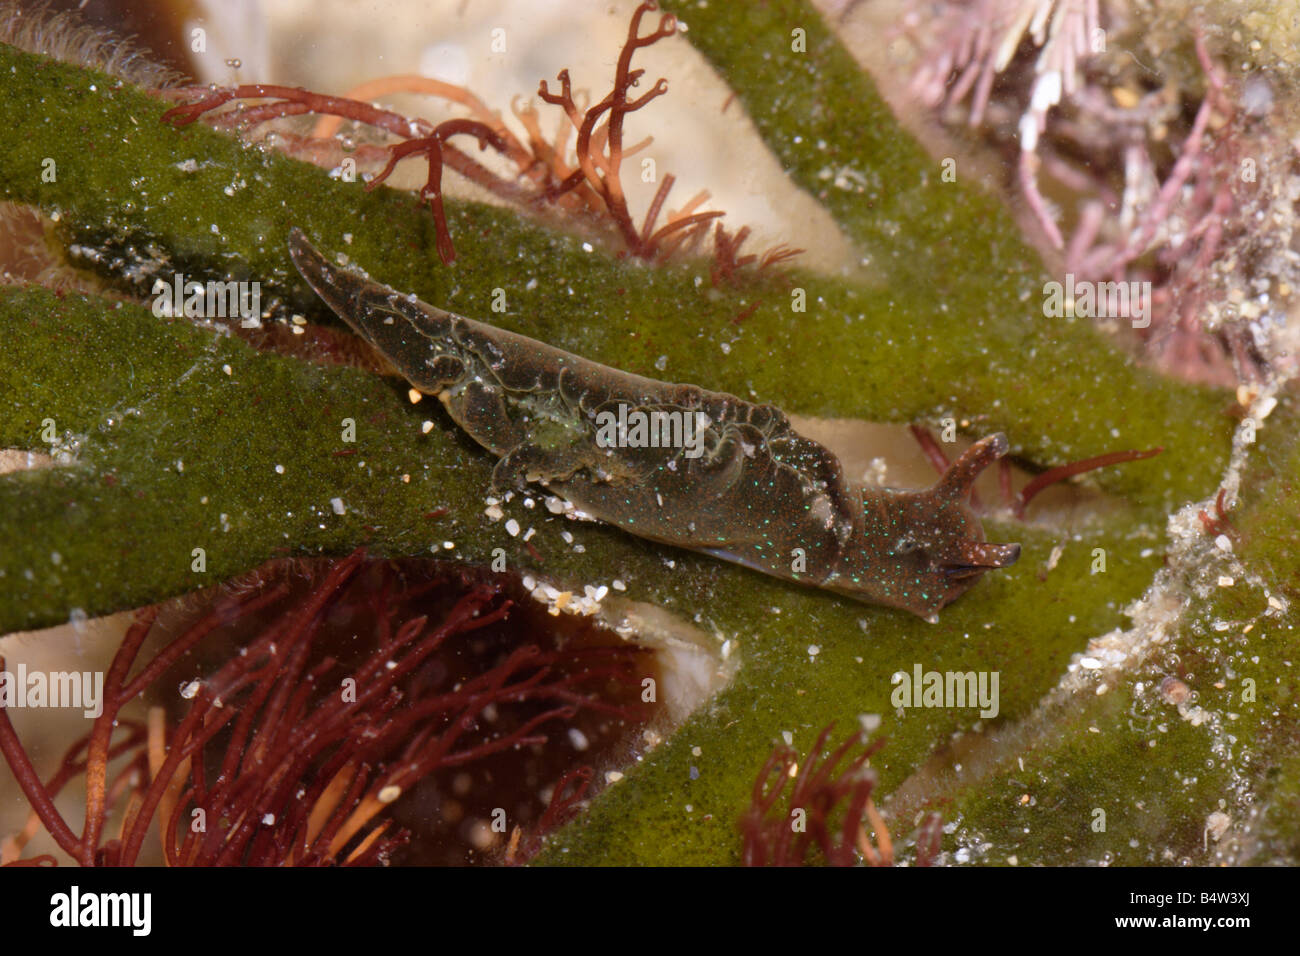 A sea slug Elysia viridis Elysiidae on its foodplant velvet horn Codium tomentosum a green seaweed UK Stock Photo